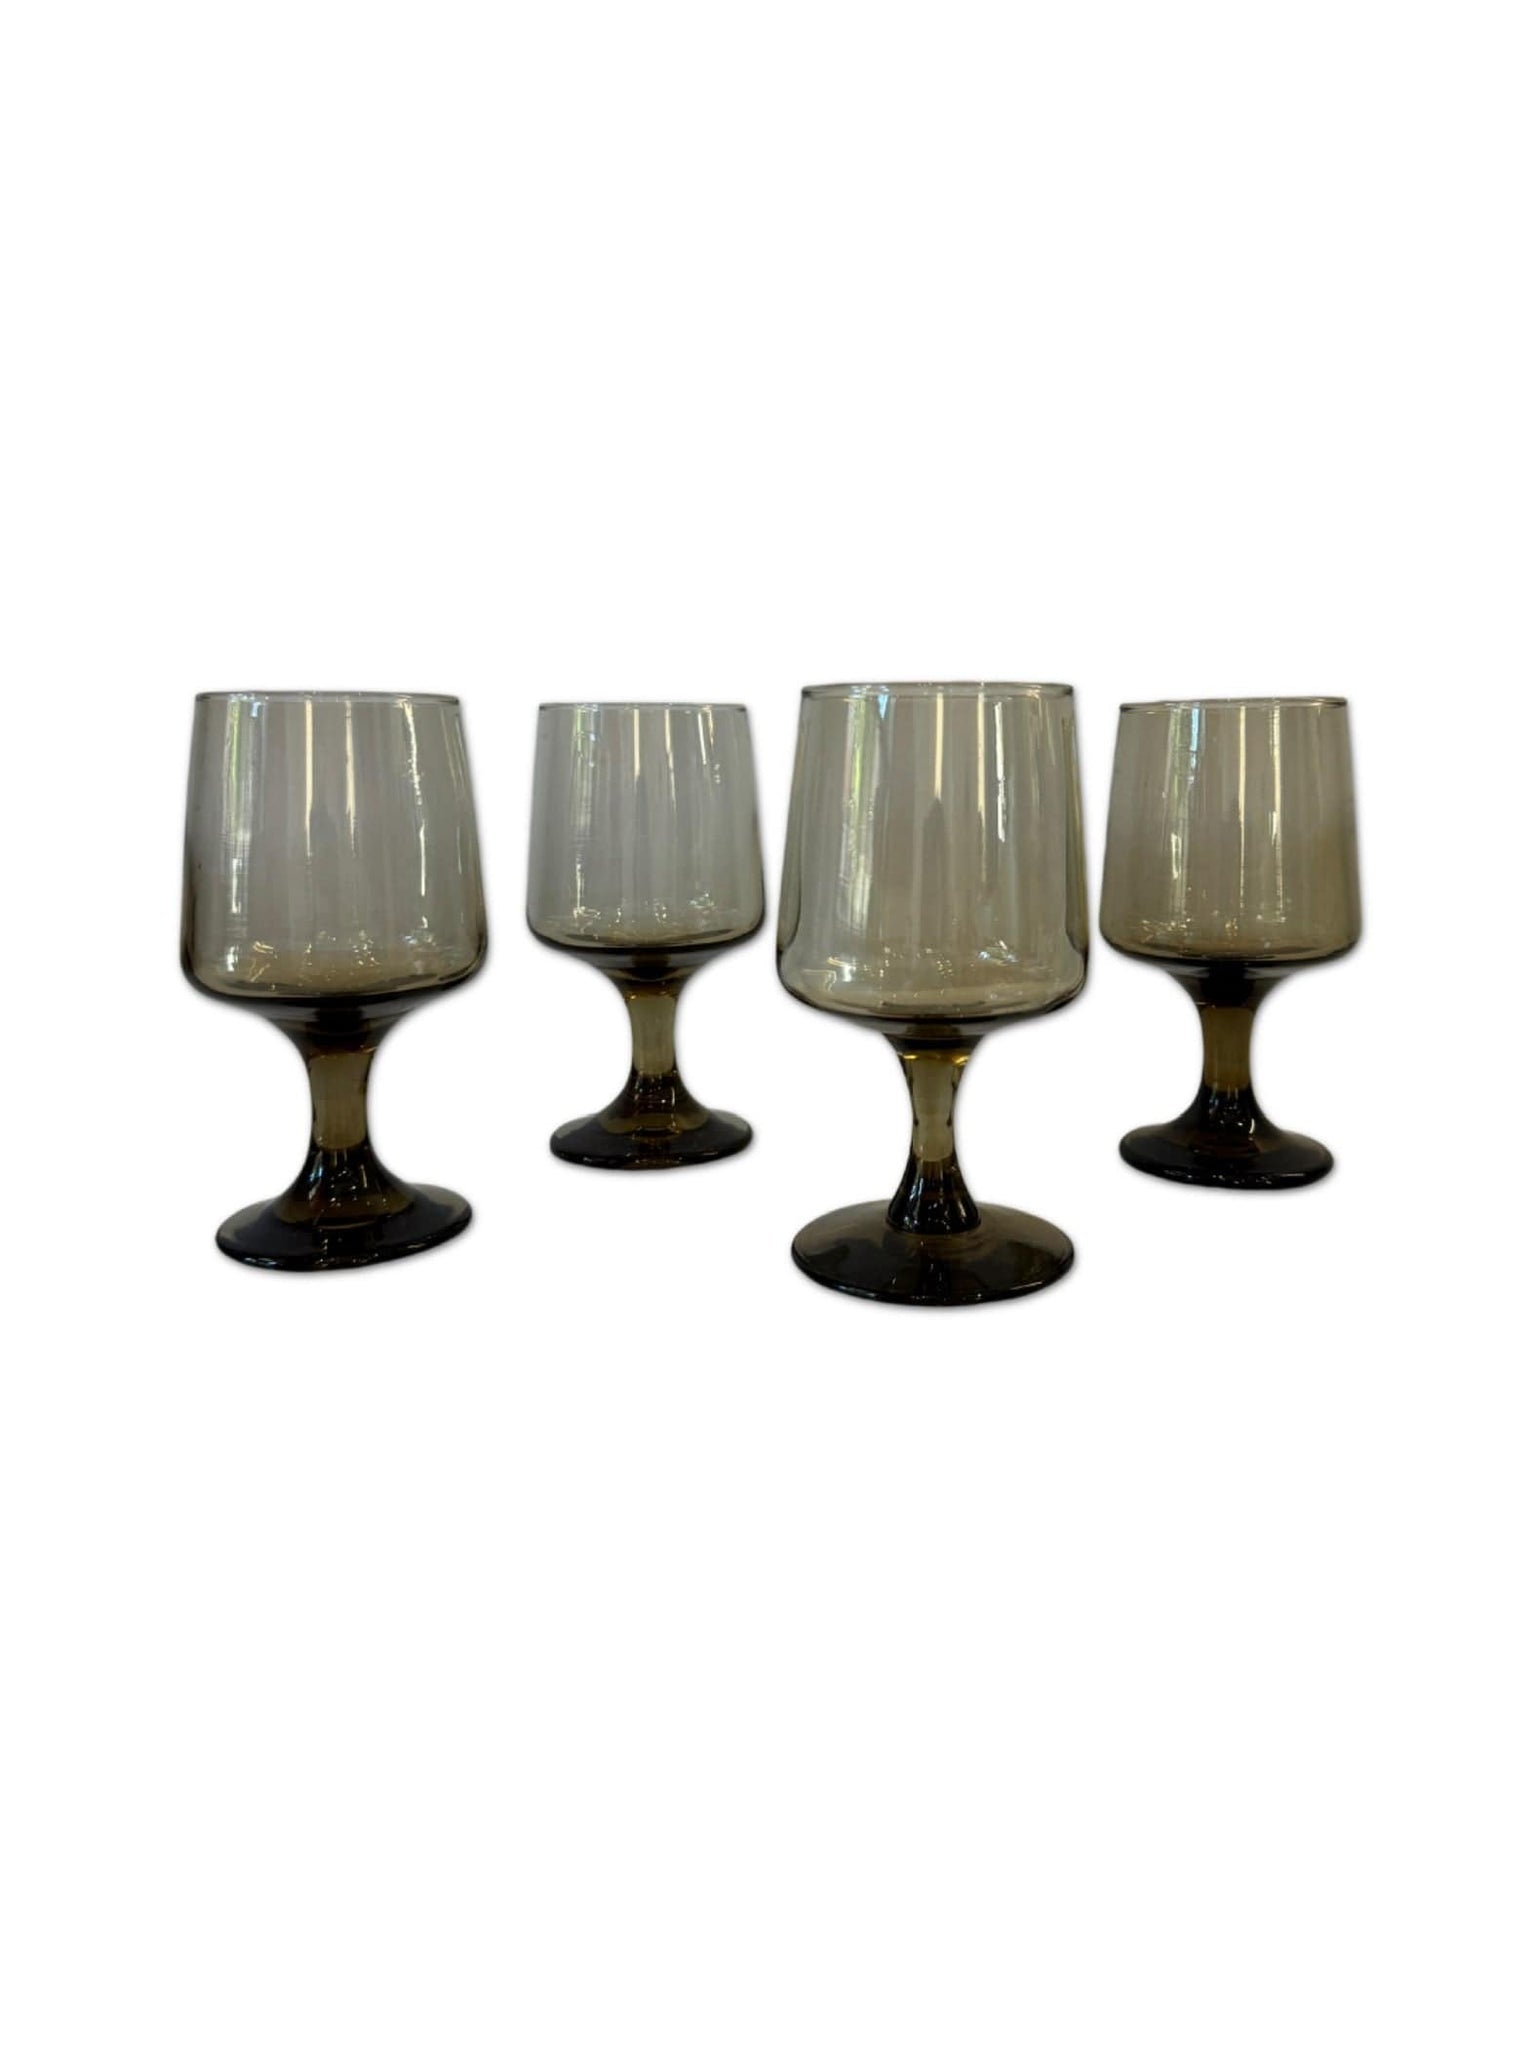 Case Study Objects Set of 4 Libbey Tawny Smokey Wine Glasses La Bomba Floristry Vancouver Canada